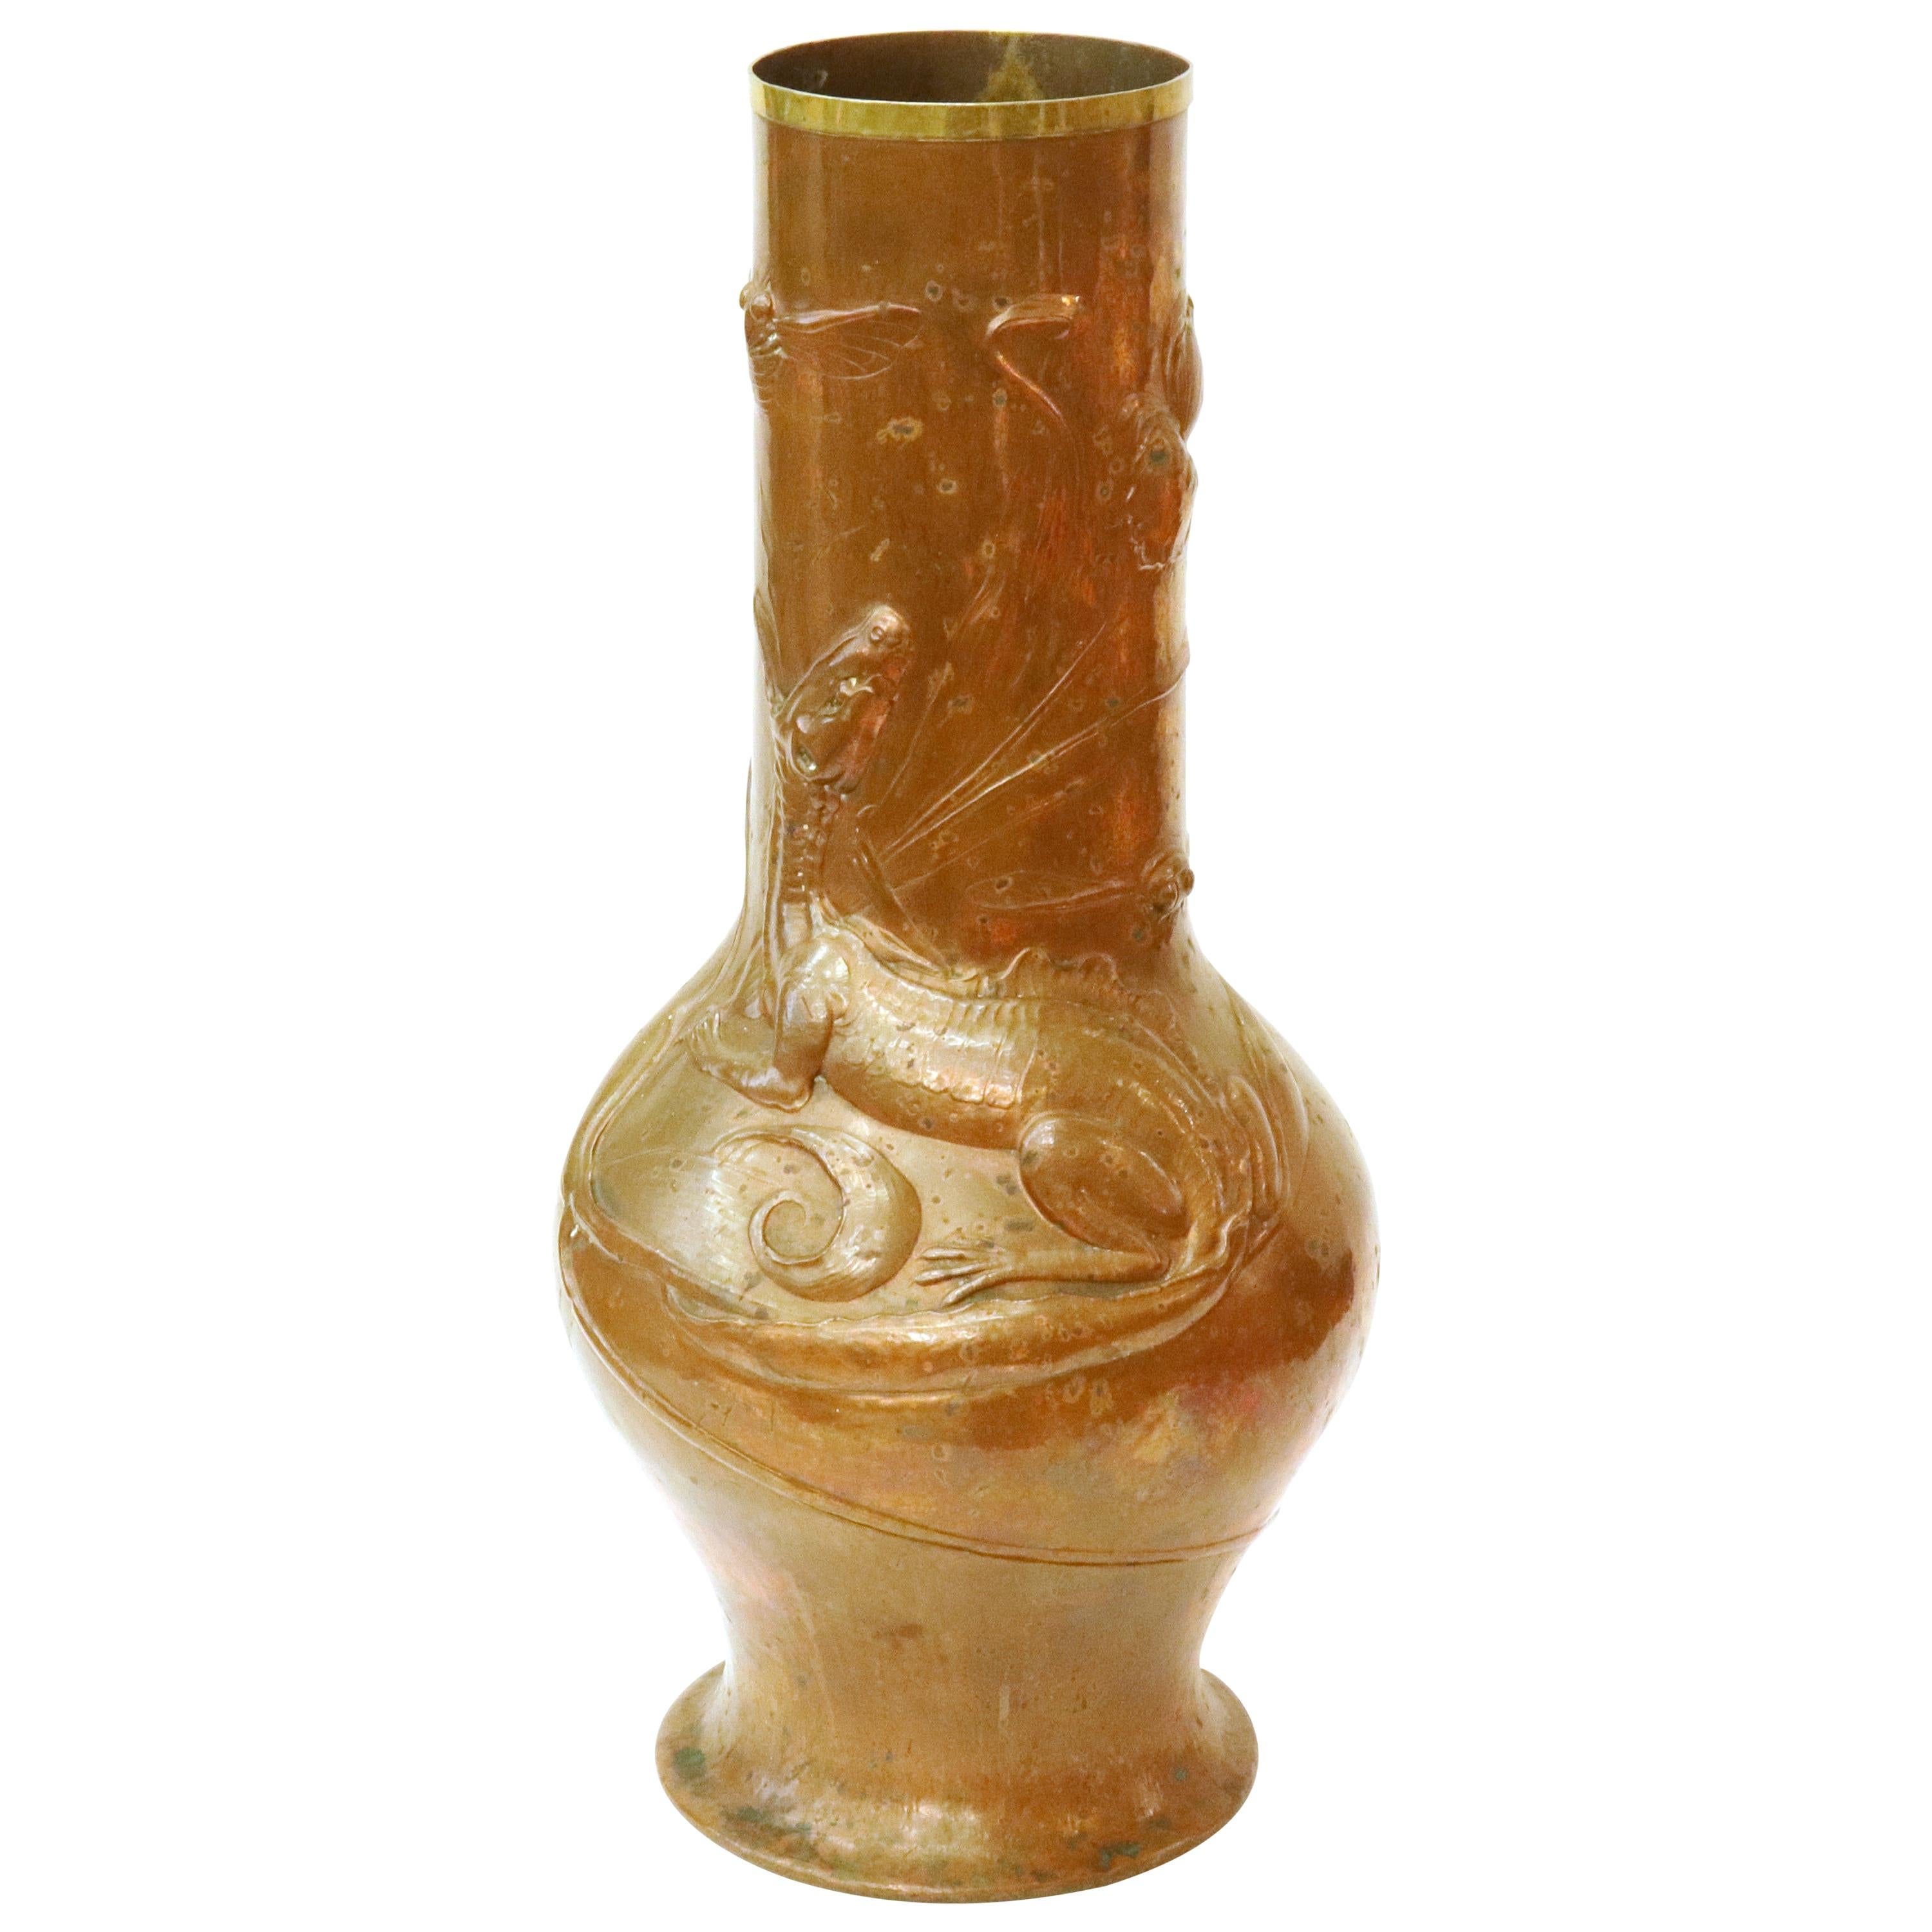 Ludwig Vierthaler German Jugendstil Lizard & Dragonfly Repousse Copper Vase For Sale